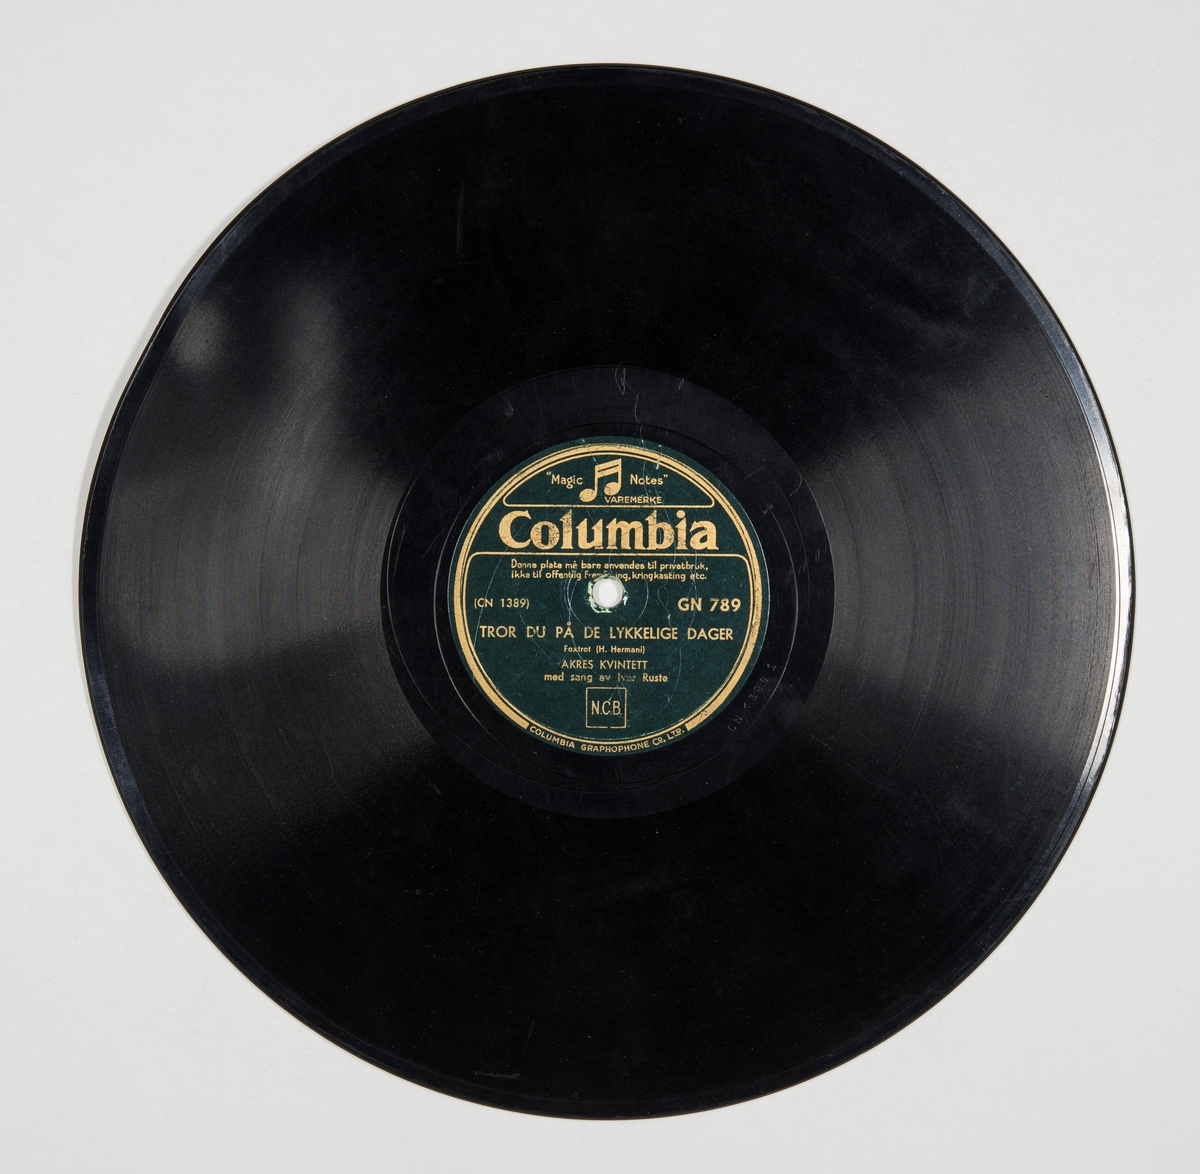 Grammofonplate fremstilt av skjellakk med plateomslag av papir.
